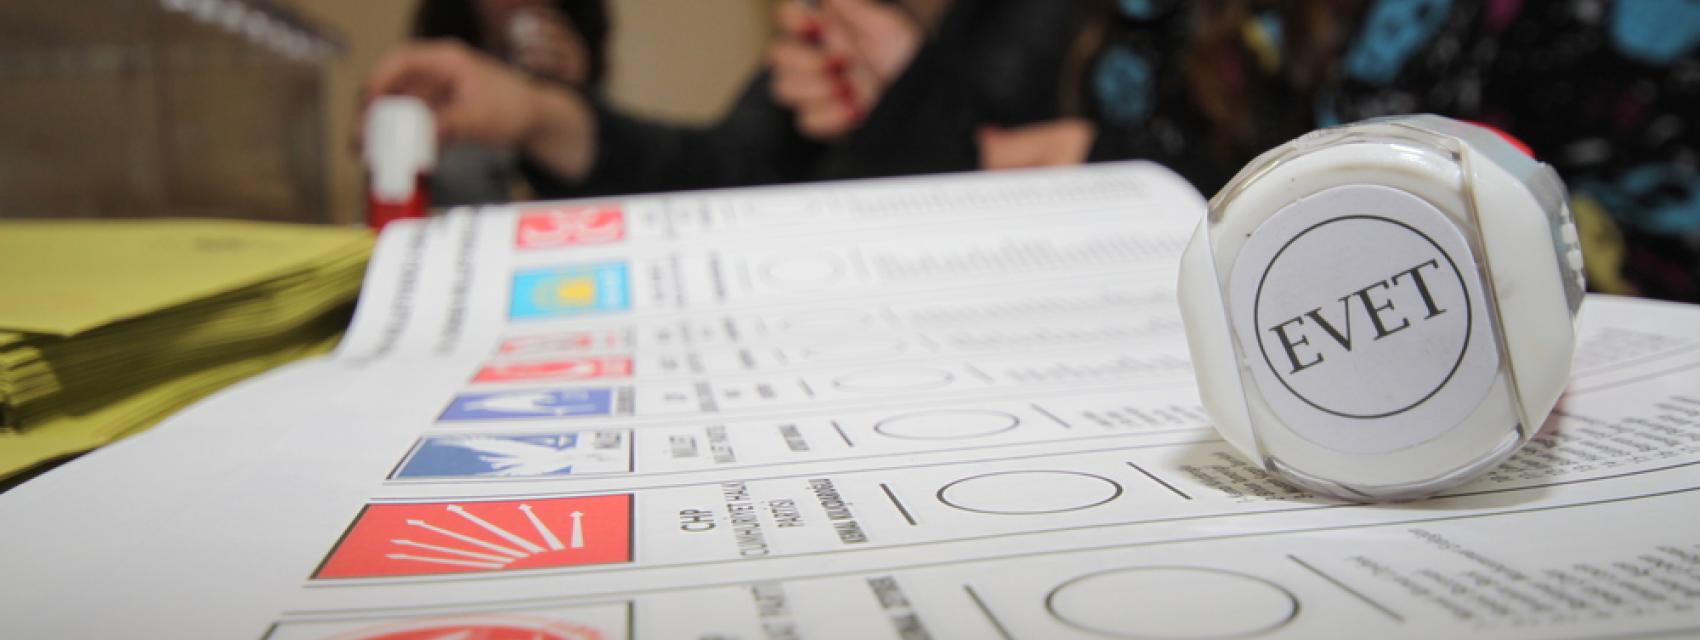 التركية الانتخابات الانتخابات التركية